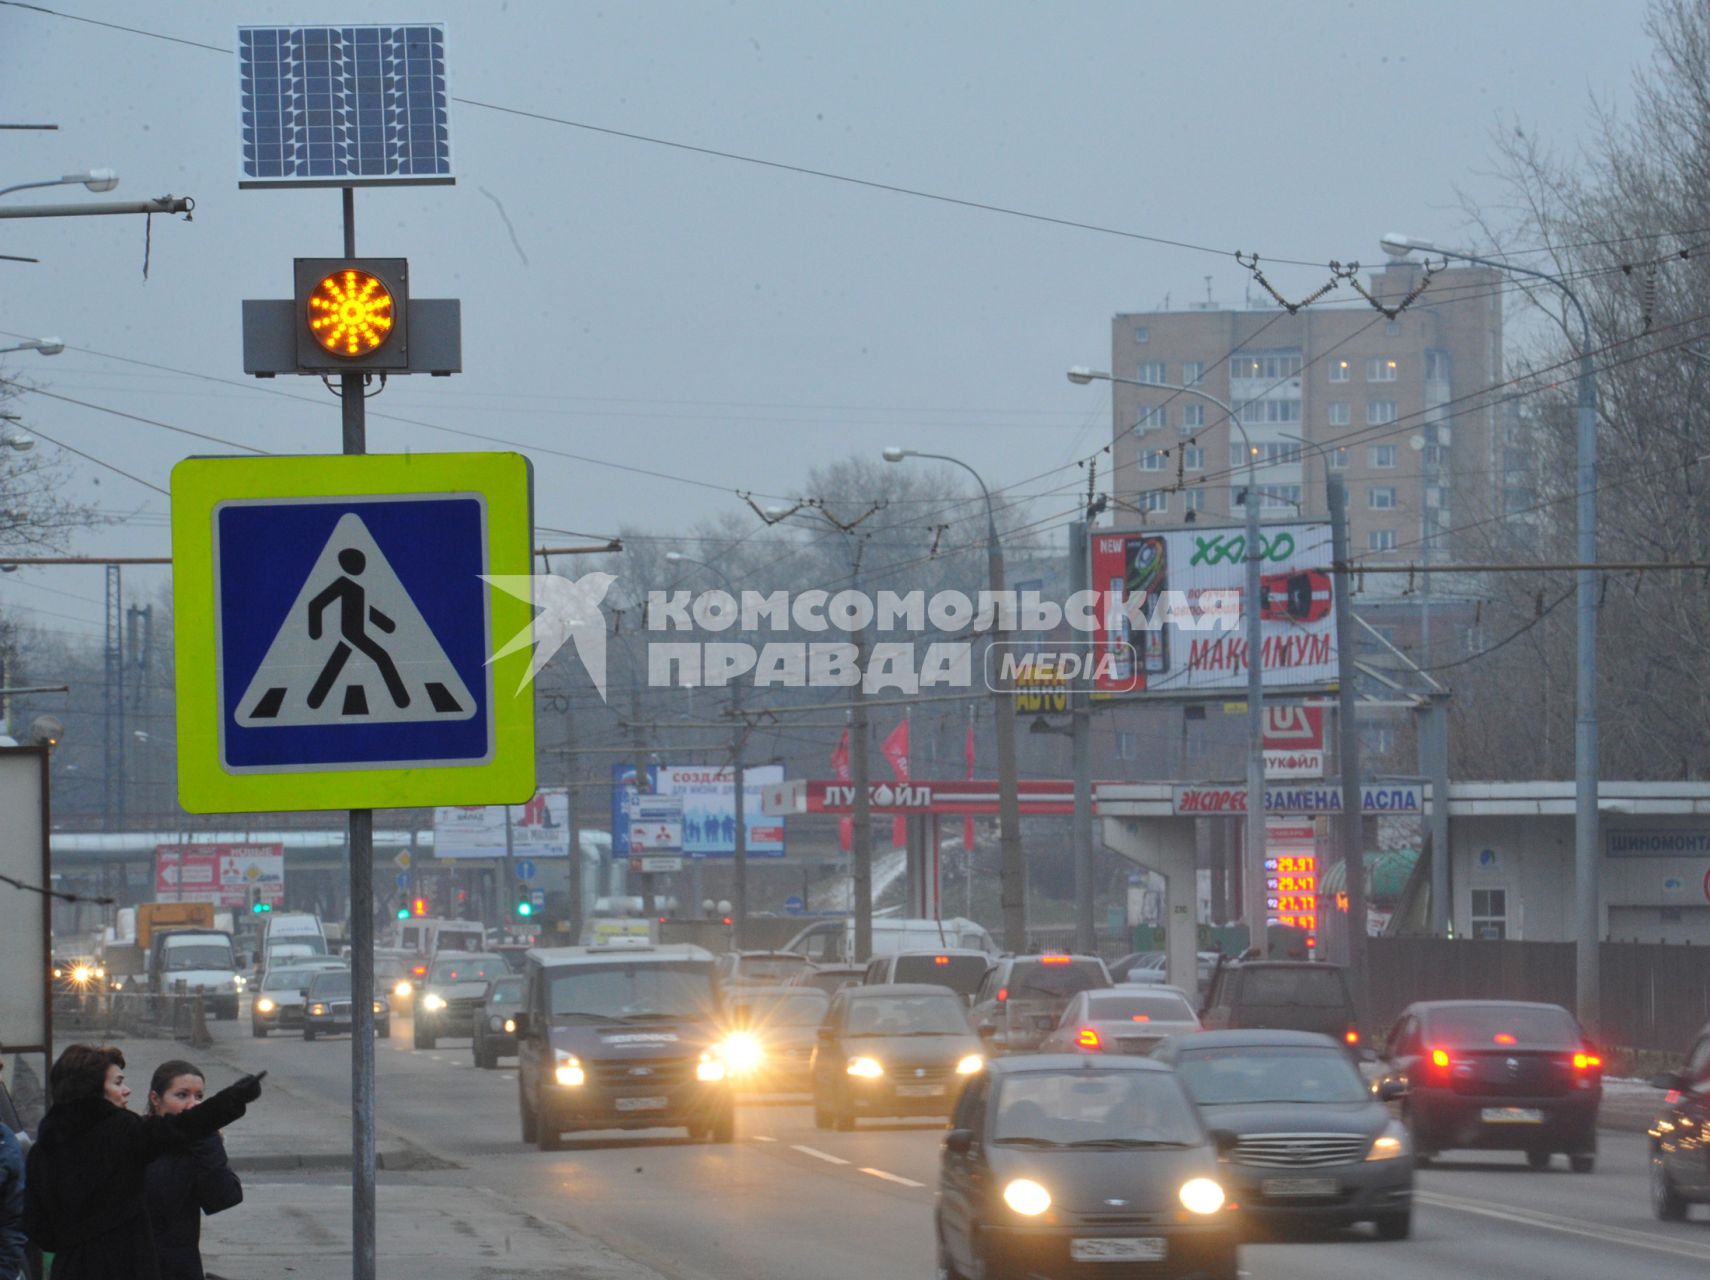 Светофор нового типа Т.7 с солнечной батареей установленный на  нерегулируемых пешеходных переходах.  01 декабря 2011 года.